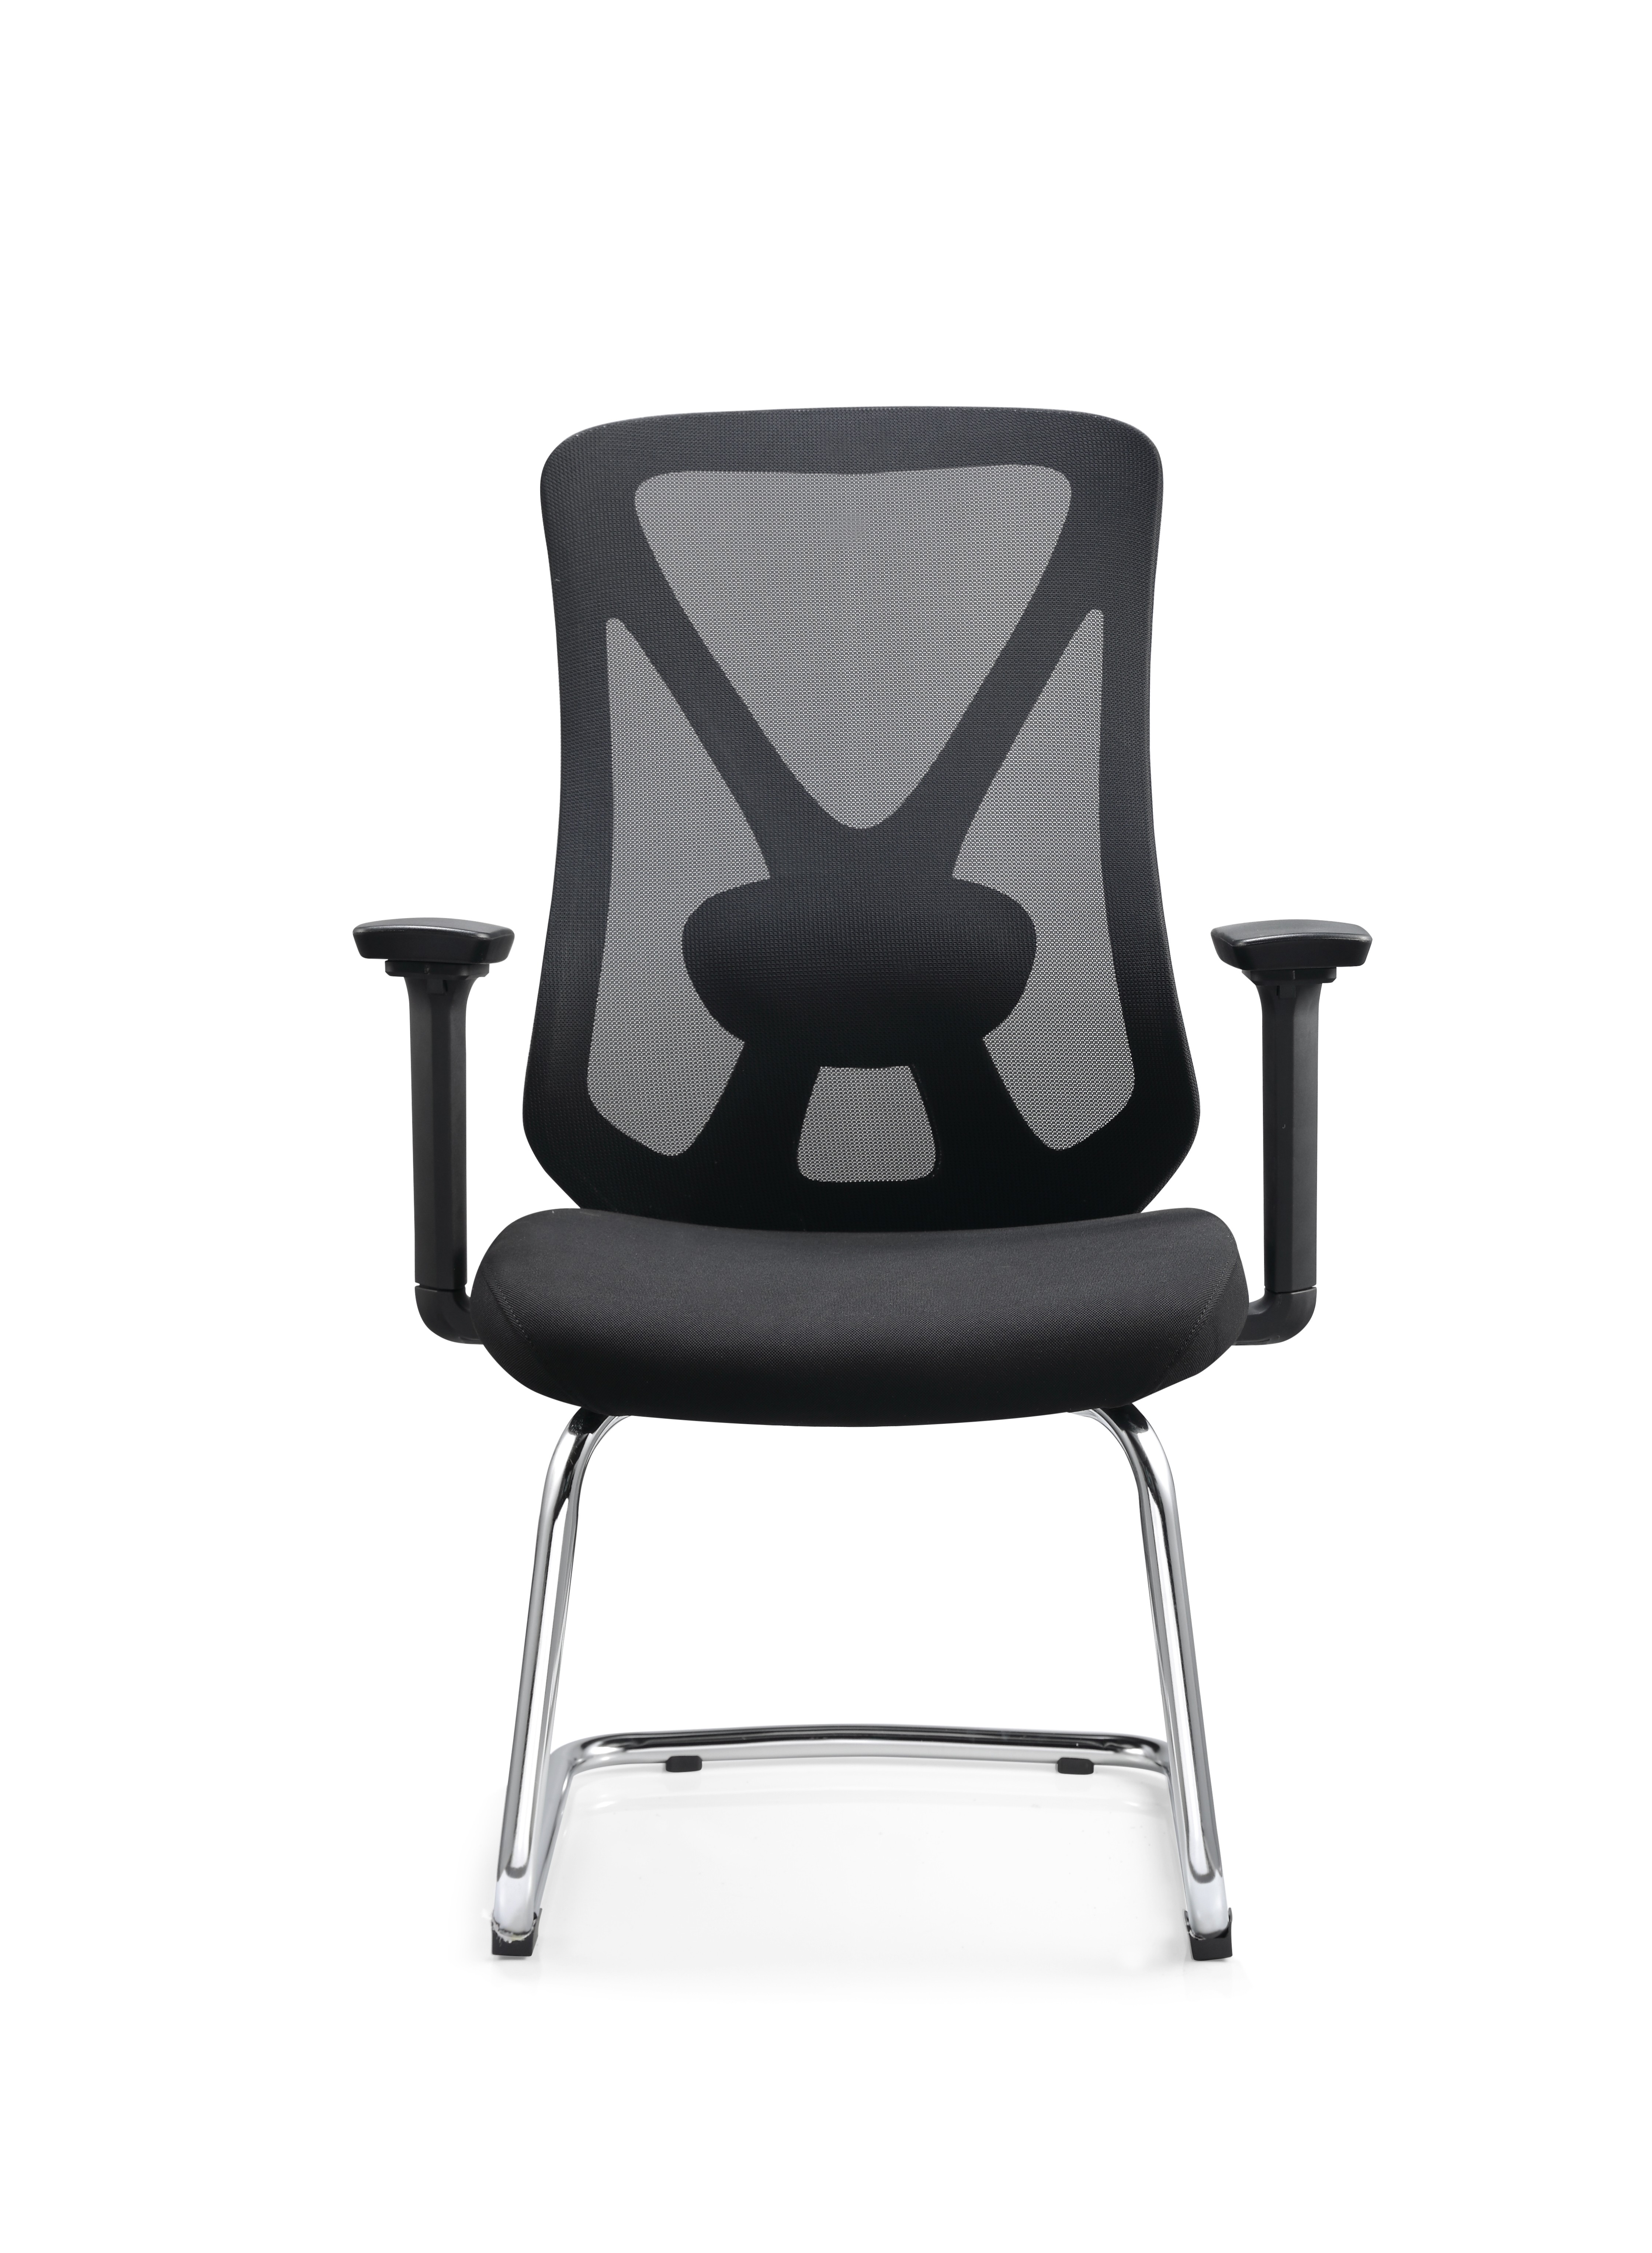 الصين Newcity 629C الحديثة 3D مسند ذراع قابل للتعديل زائر شبكة كرسي الشركة المصنعة للمبيعات المباشرة مكتب زائر كرسي عالية الجودة زائر كرسي تنفيذي زائر كرسي المورد فوشان الصين الصانع